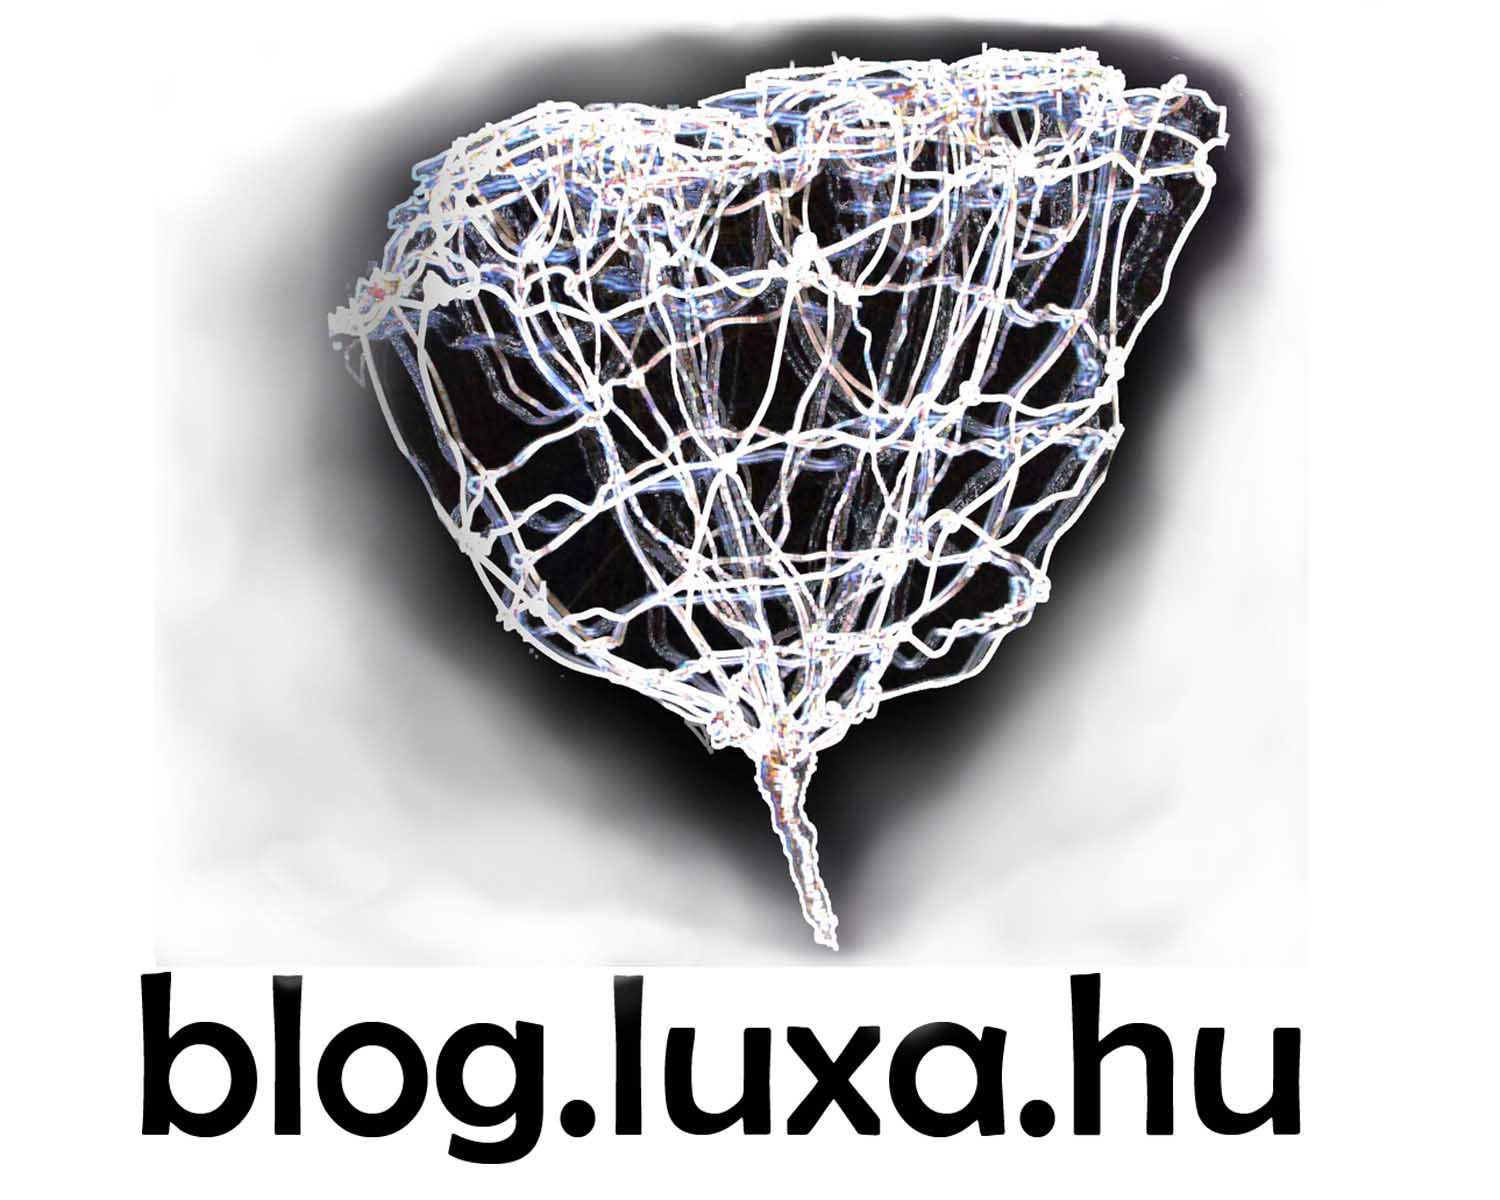 Luxa blogja